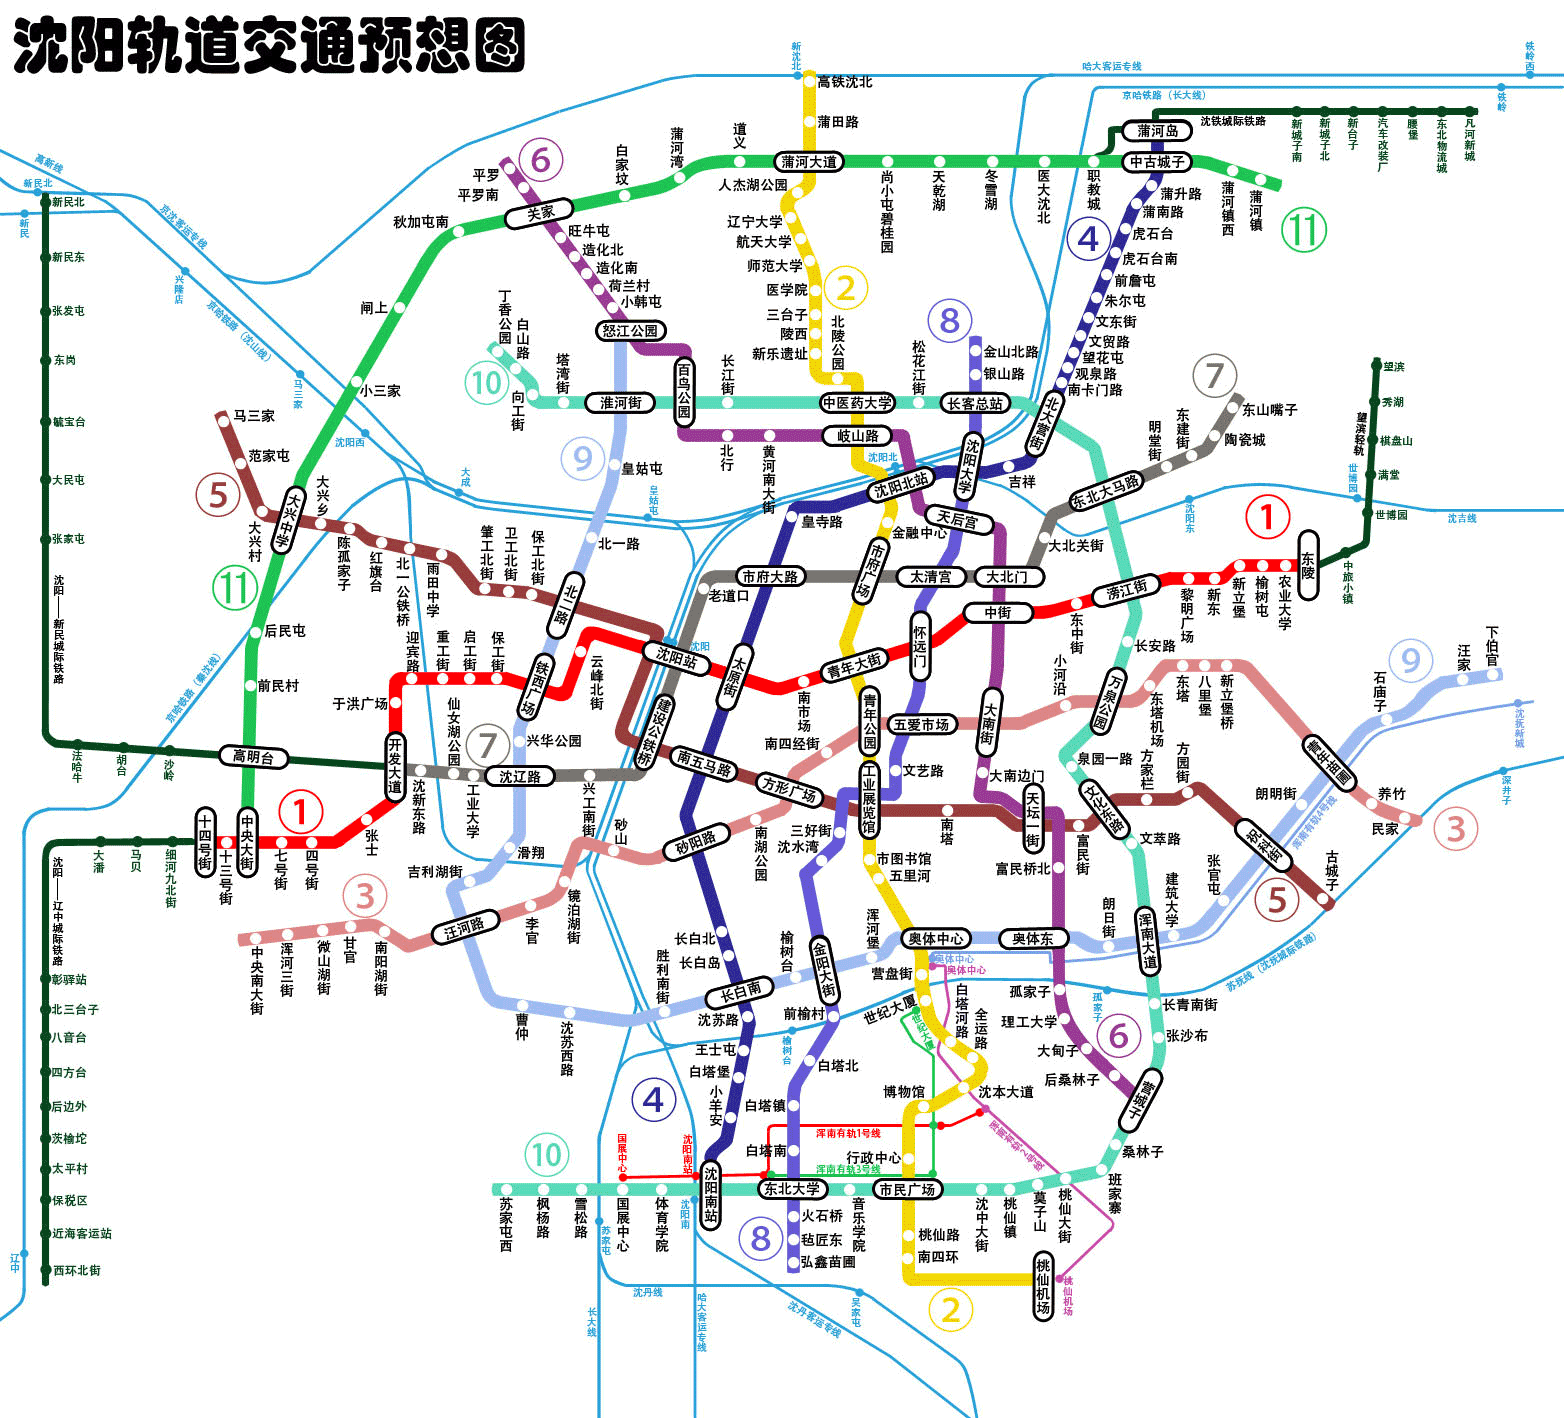 沈阳地铁高清线路图 2015 最新高清版_附地铁规划图0